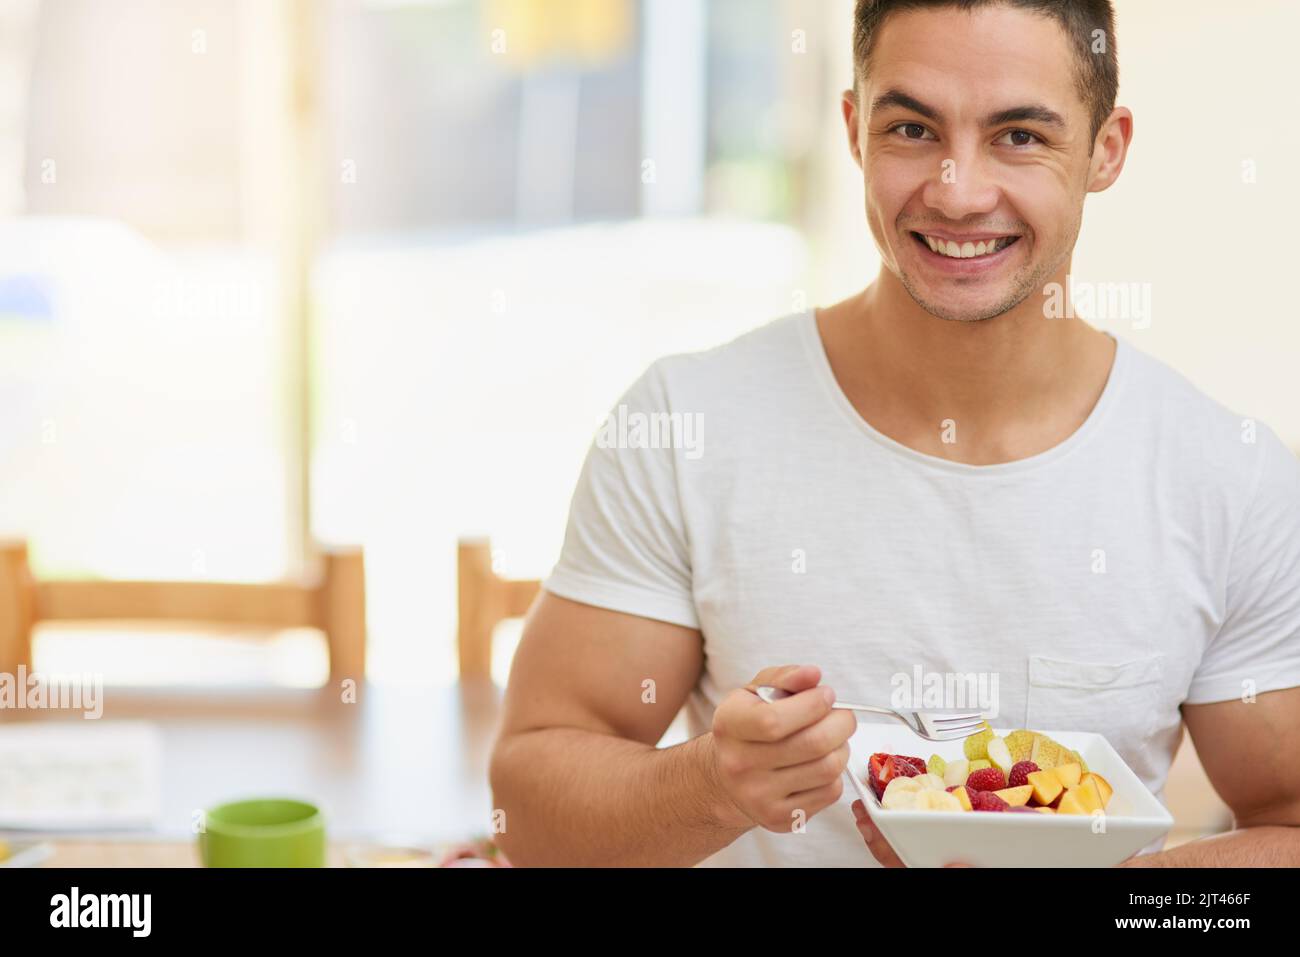 Mangiate un pasto a base di frutta a colazione, un giovane che mangia un'insalata di frutta. Foto Stock